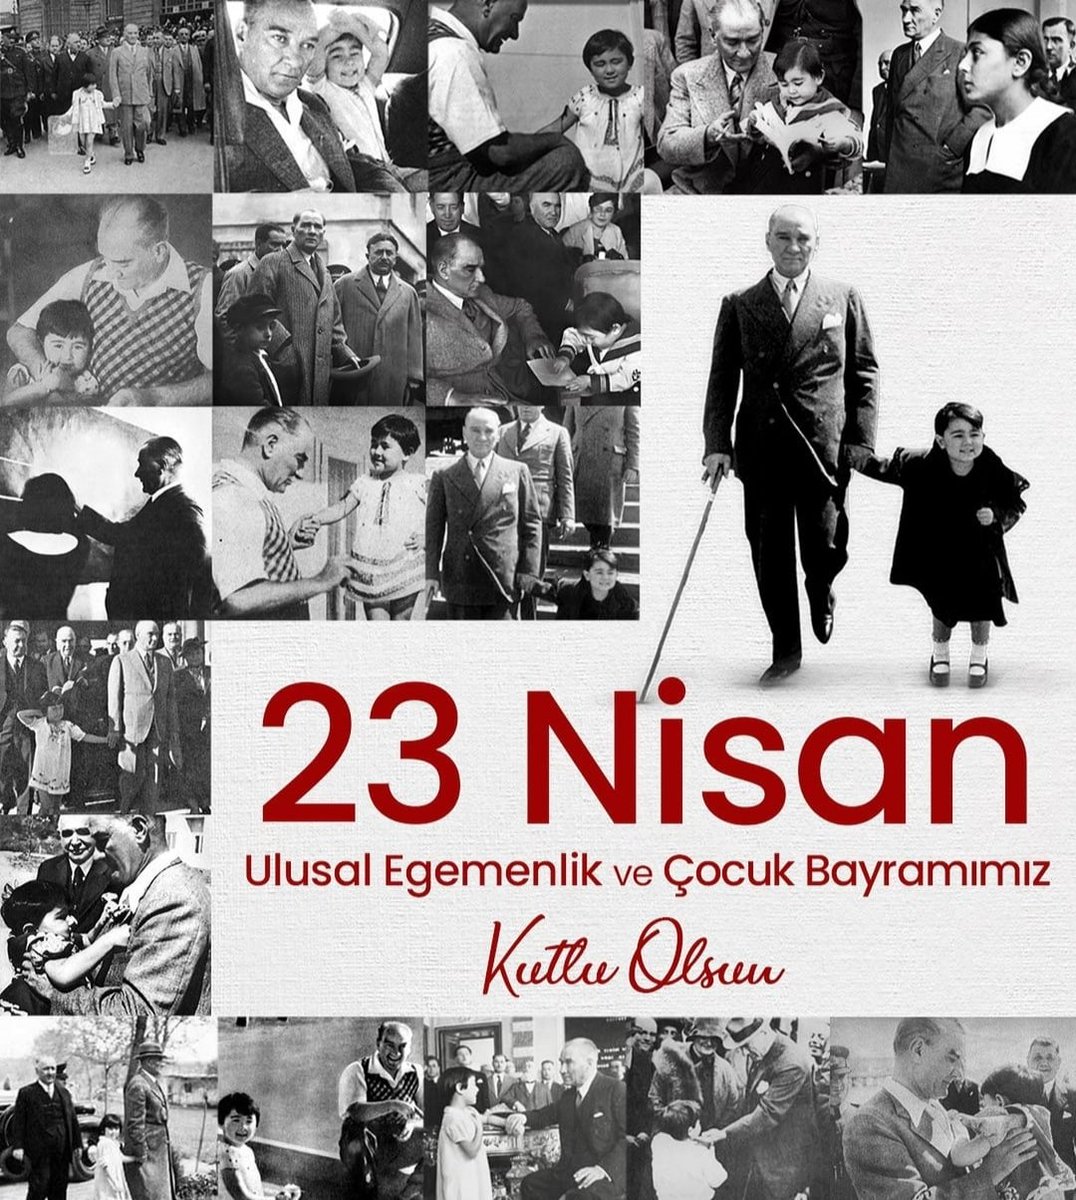 Mustafa Kemal Atatürk ❤ Senin çocukların olmak, paha biçilemez. #23nisanulusalegemenlikveçocukbayramıkutluolsun 🇹🇷